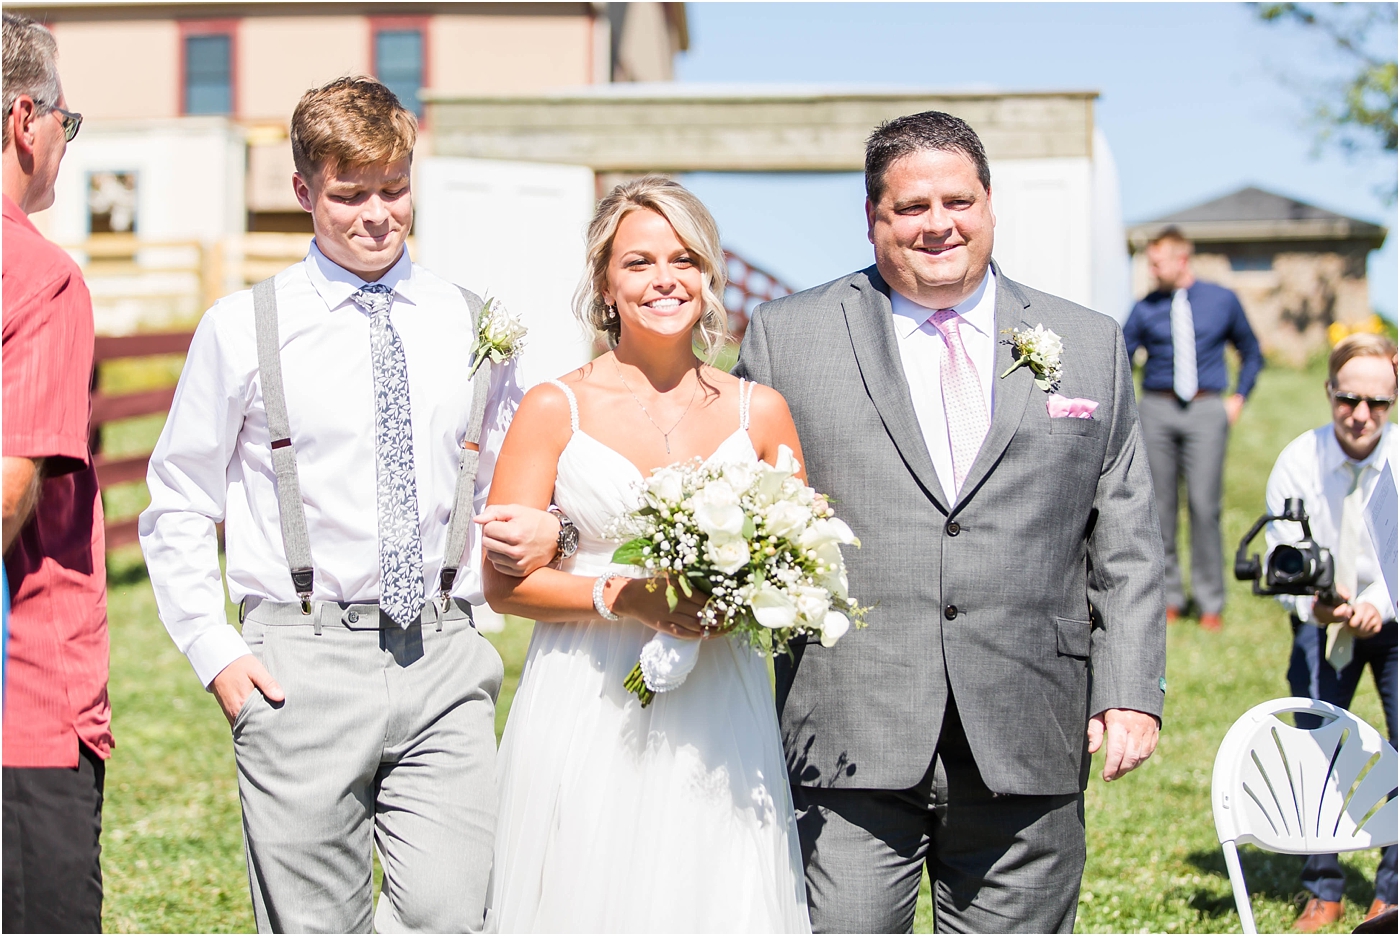 Loren Jackson Photography,Peacock Ridge Wedding,Photographer Akron Ohio,Rustic Barn Wedding,cleveland wedding photography,